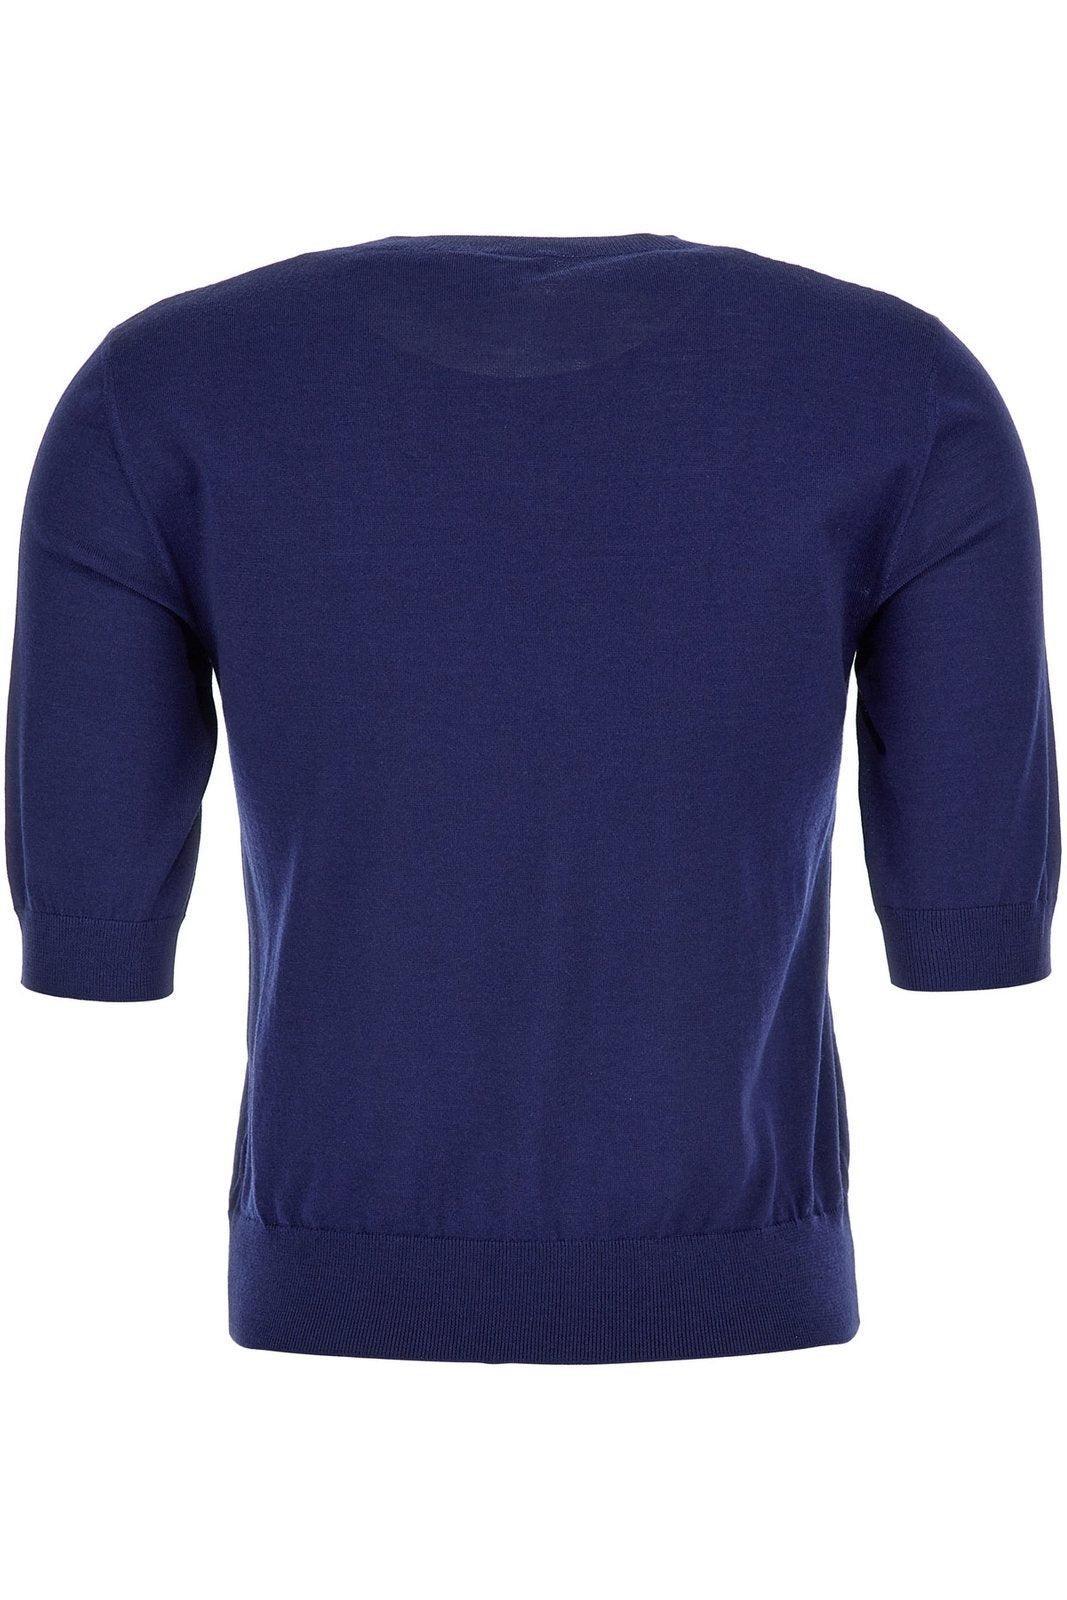 Loewe Anagram Cropped Sleeves Sweater